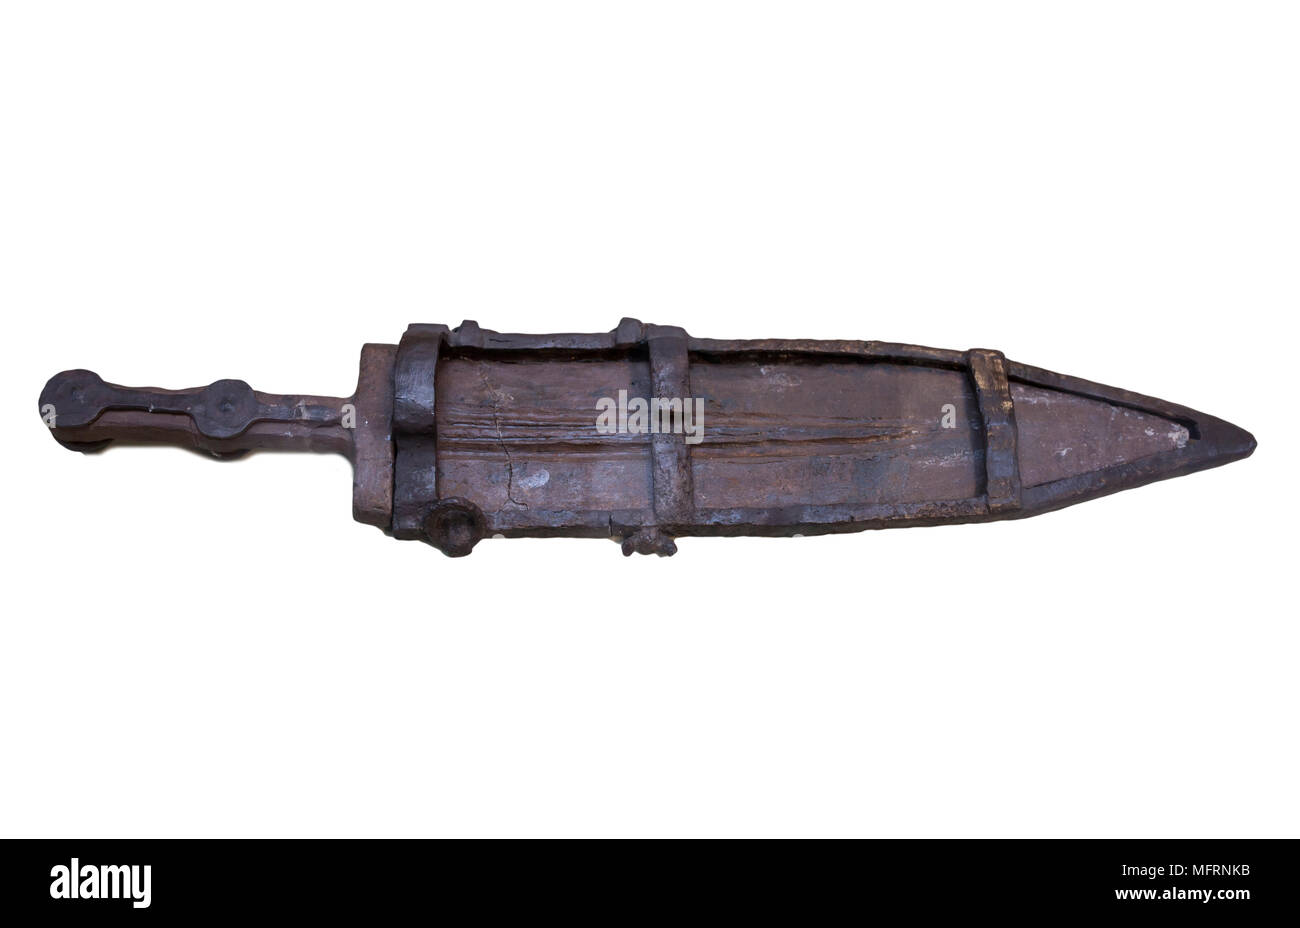 Jaen, Spagna - Dicembre 29th, 2017: Pugio, antico pugnale adottato da soldati romani da guerrieri iberica. Museo di Jaen Foto Stock